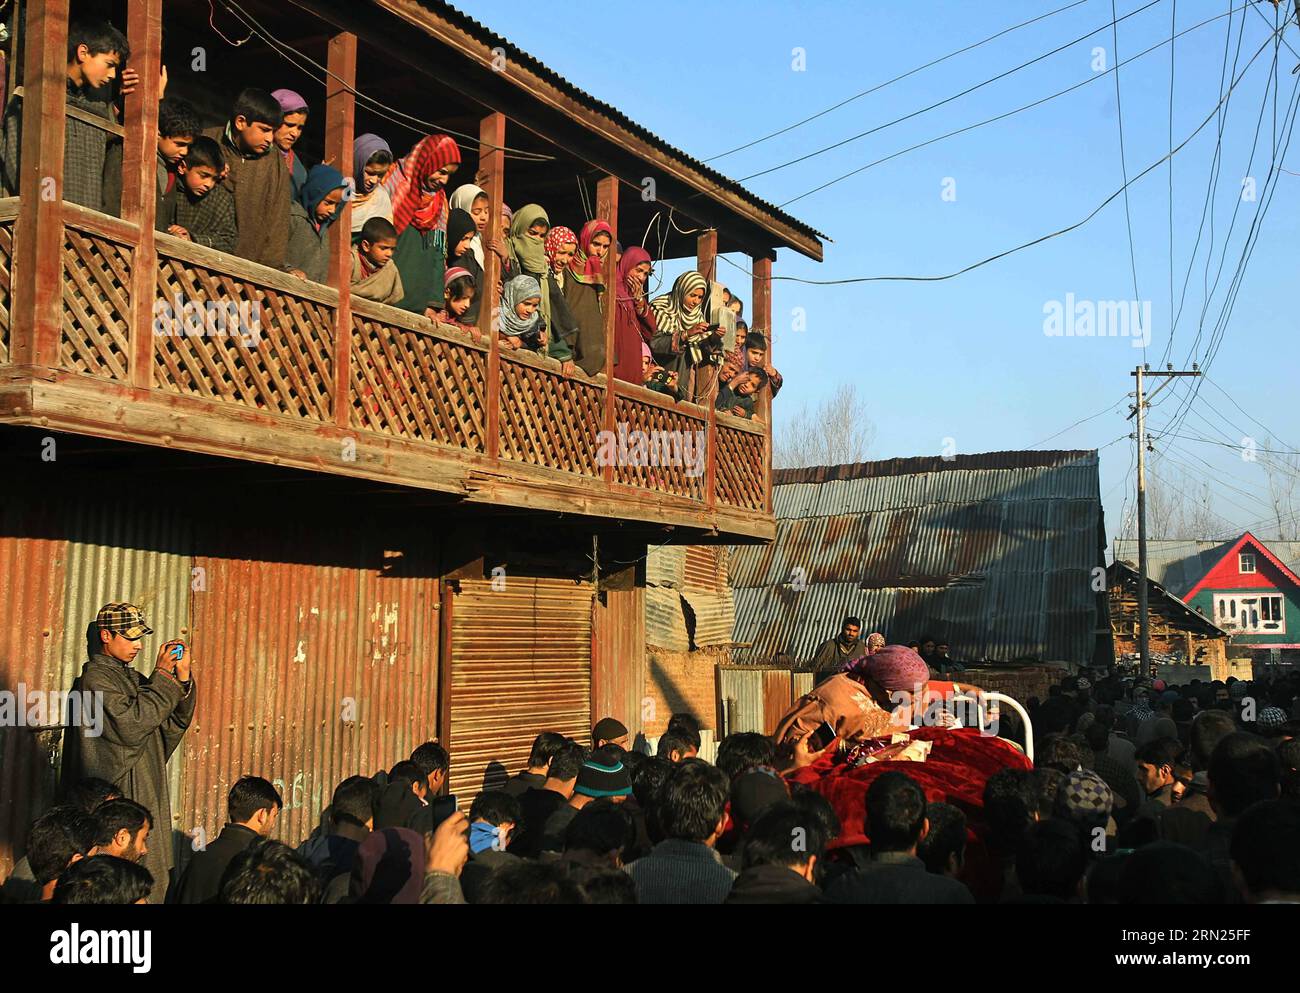 (150210) -- SRINAGAR, 10 febbraio 2015 -- gli abitanti del villaggio del Kashmir assistono alla processione funebre del giovane ucciso Farooq Ahmad Bhat a Palhallan di Pattan, a circa 30 km a nord-ovest della città di Srinagar, capitale estiva del Kashmir controllato dagli indiani, il 10 febbraio 2015. Il martedì mattina centinaia di persone si sono riunite a Palhallan di Pattan per piangere l'uccisione del ventenne Farooq Ahmad Bhat e partecipare alle sue preghiere funebri. Nuovi scontri sono scoppiati nel Kashmir controllato dagli indiani martedì dopo il funerale, hanno detto i funzionari. ) KASHMIR-SRINAGAR-UCCISIONE-FUNERALE CIVILE JavedxDar PUBLICATIONxNOTxINxCHN Srin Foto Stock